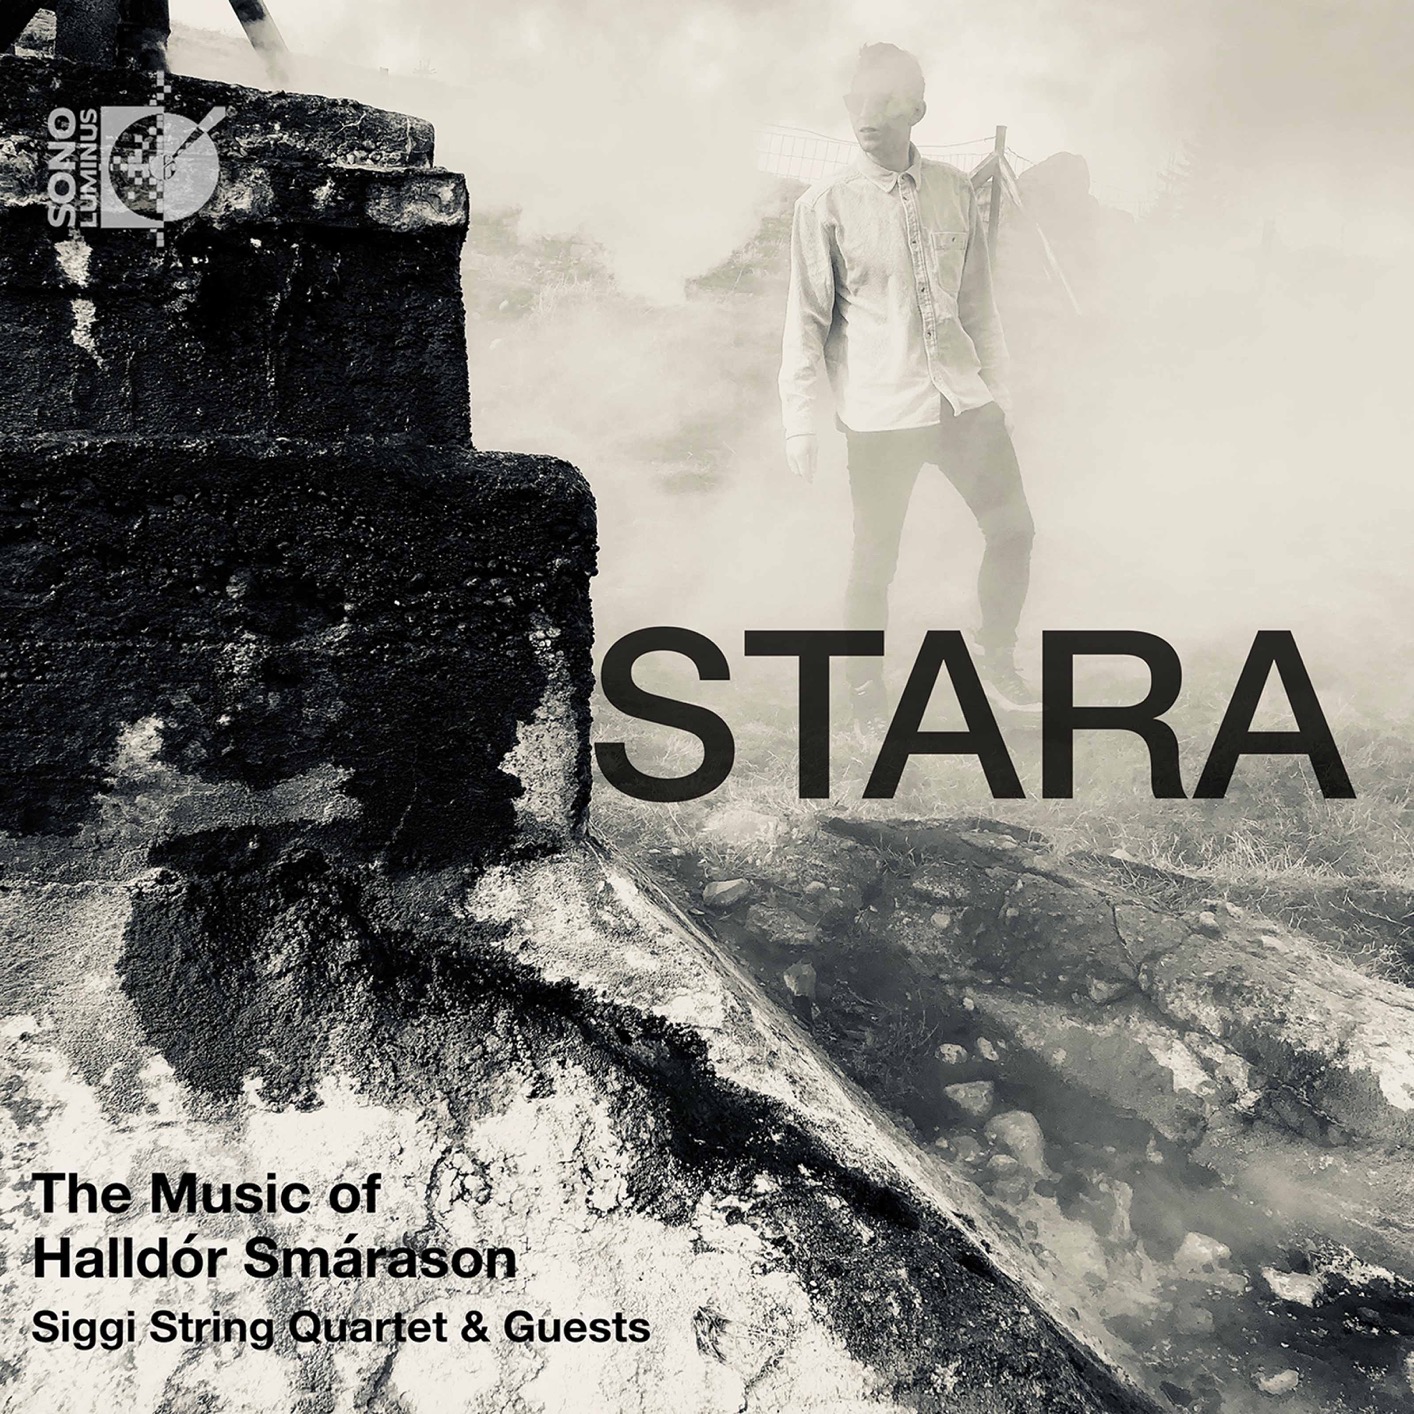 Siggi String Quartet - Stara - The Music of Halldor Smarason (2020) [FLAC 24bit/192kHz]